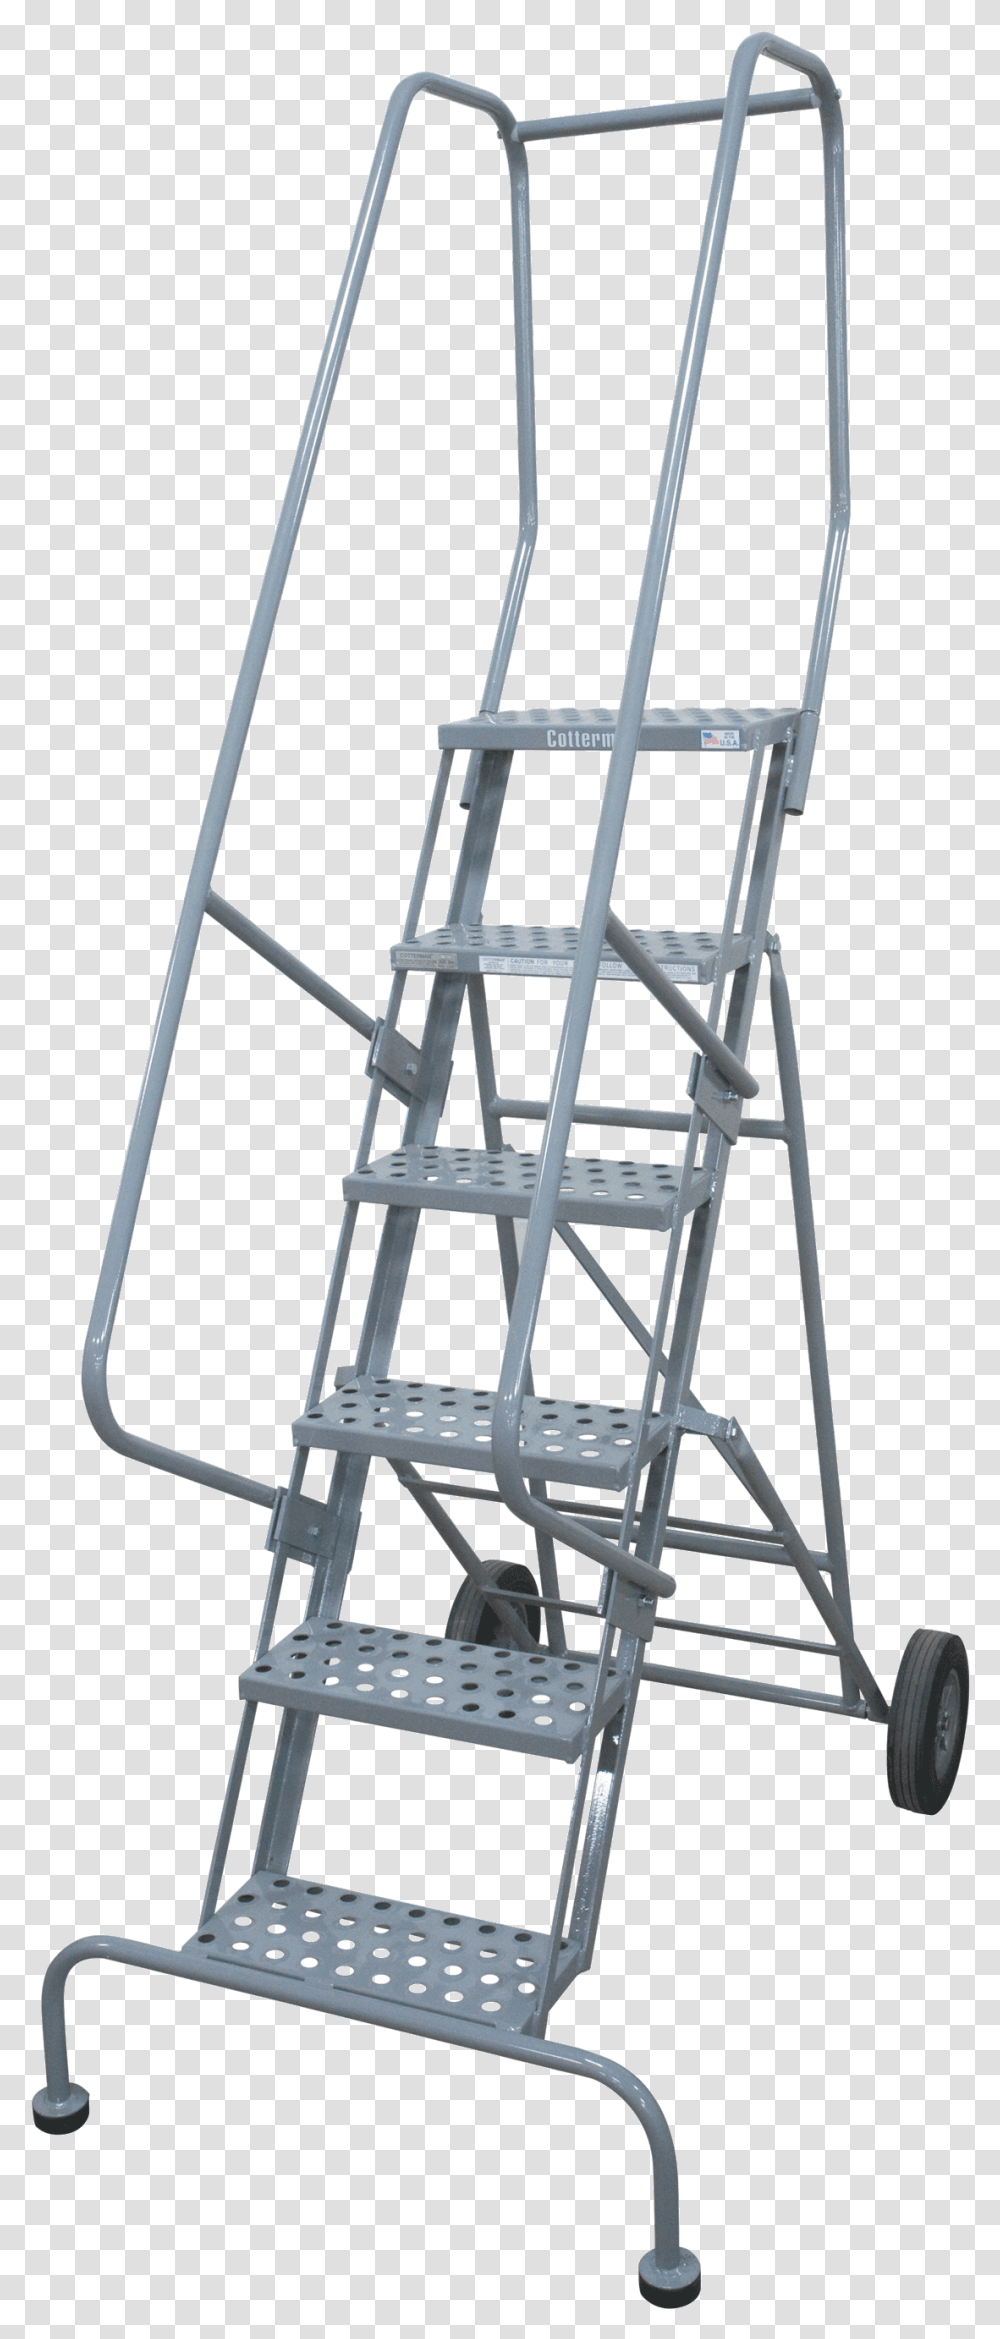 Climbing Ladder Shelf, Chair, Furniture, Stand, Shop Transparent Png